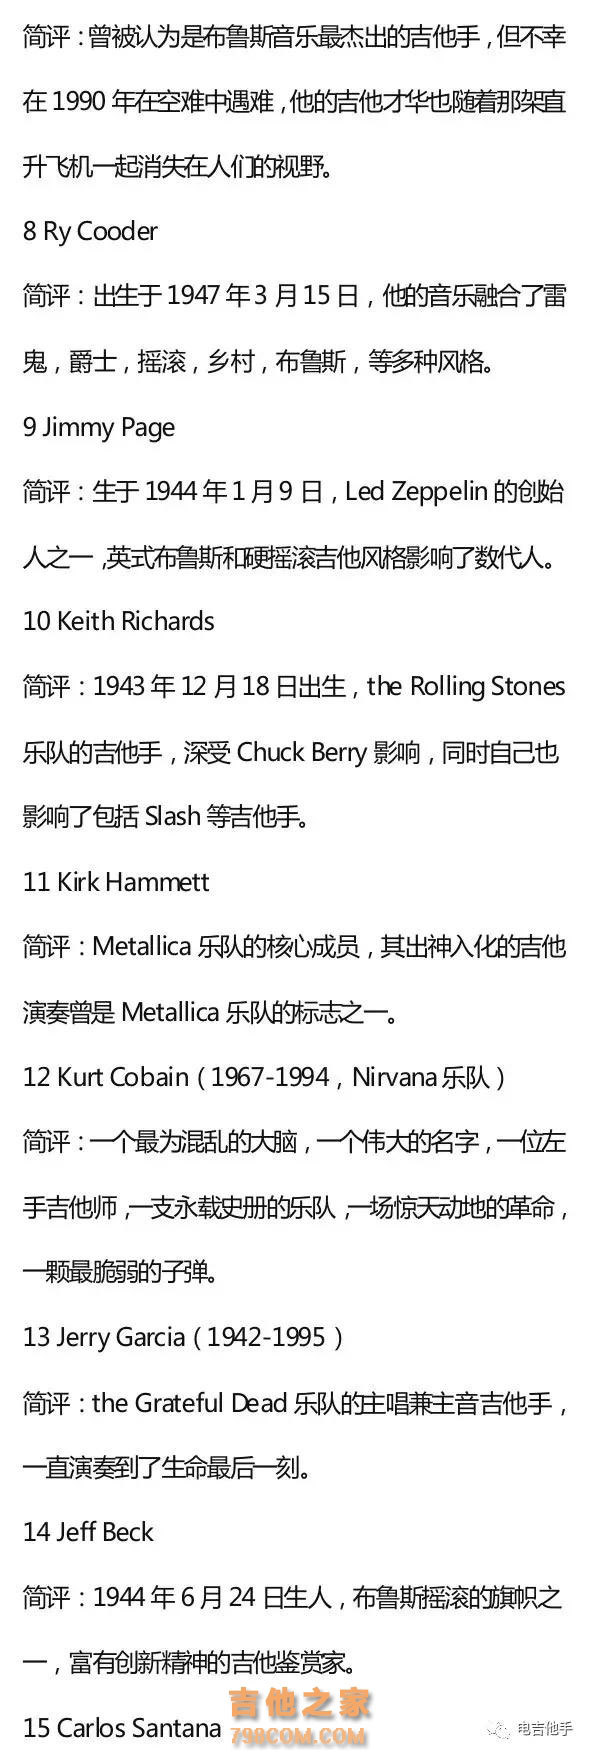 《滚石》杂志评选100位最伟大的吉他大师名单